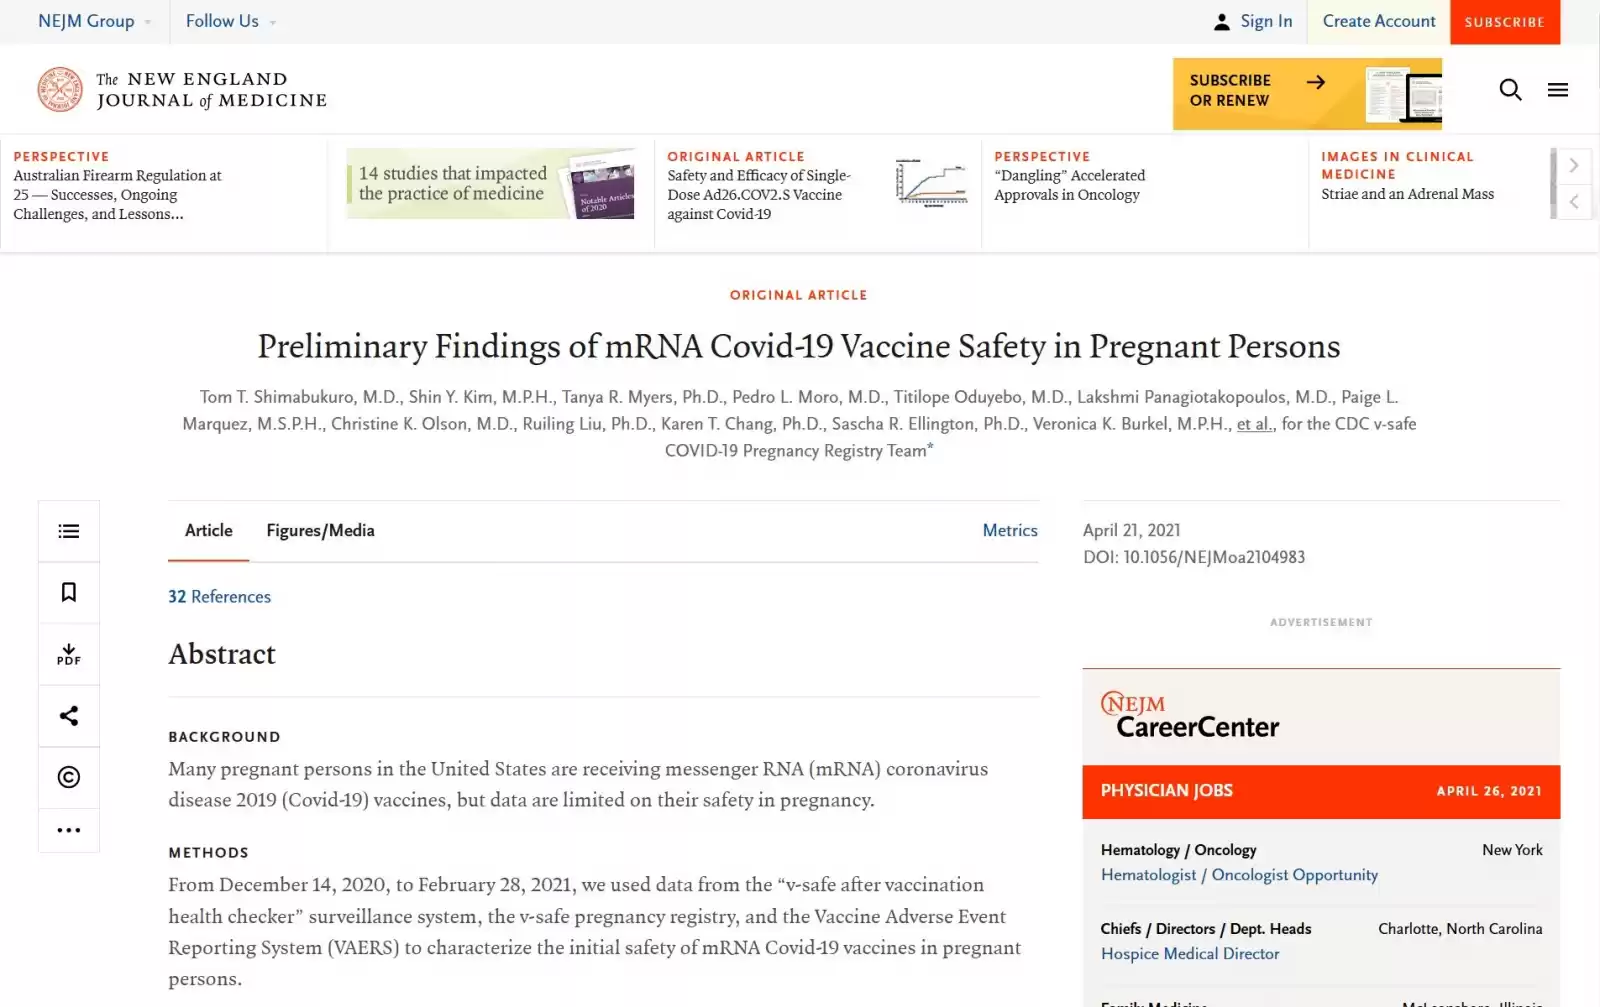 Wstępne ustalenia dotyczące bezpieczeństwa szczepionki mRNA Covid-19 u kobiet w ciąży